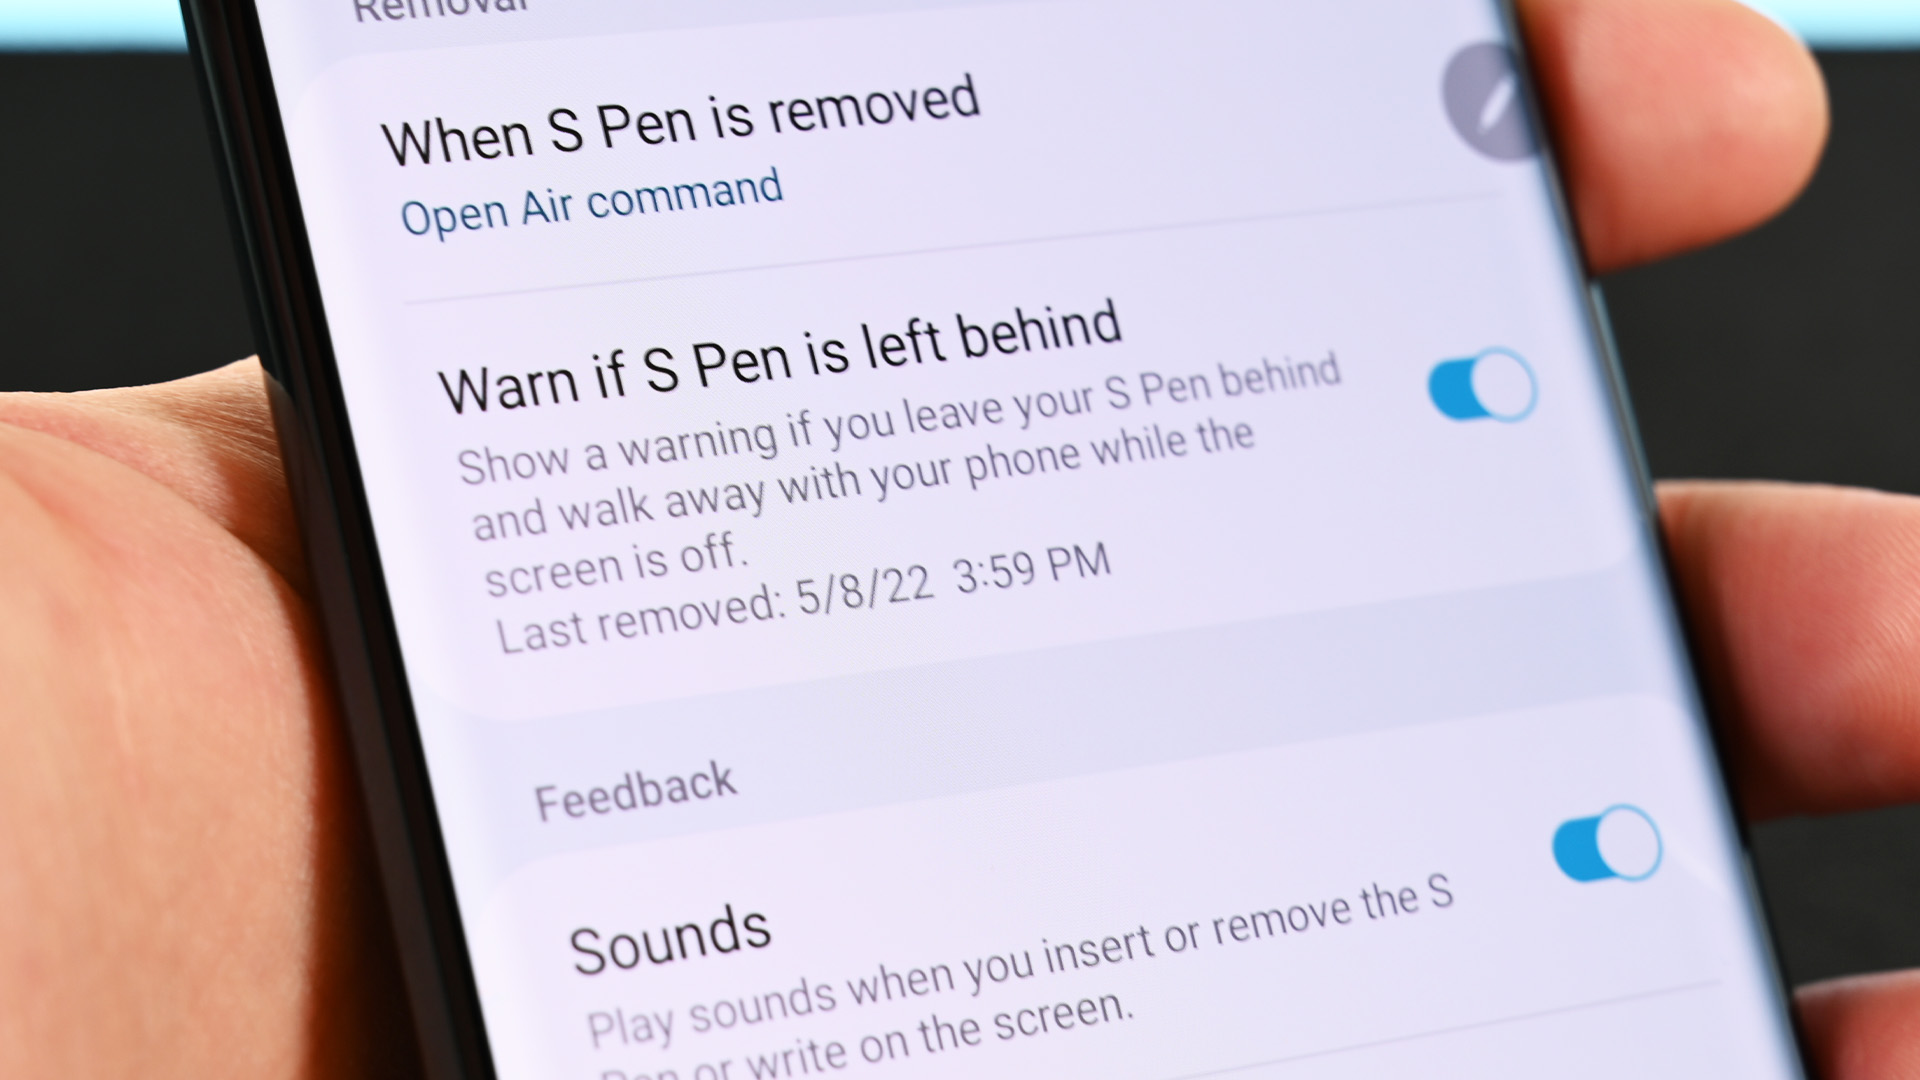 Warn if S Pen is left behind